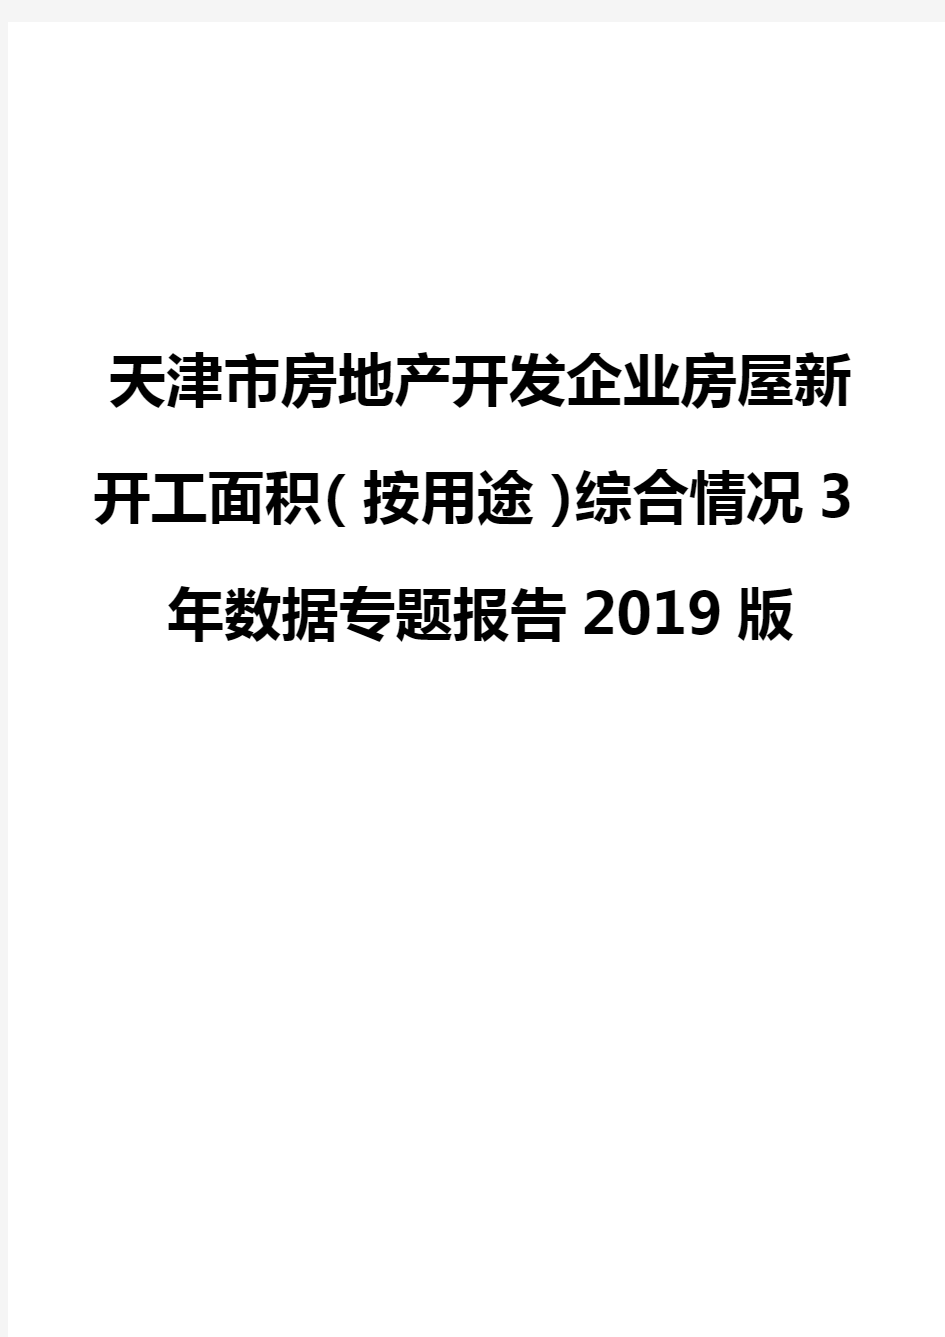 天津市房地产开发企业房屋新开工面积(按用途)综合情况3年数据专题报告2019版